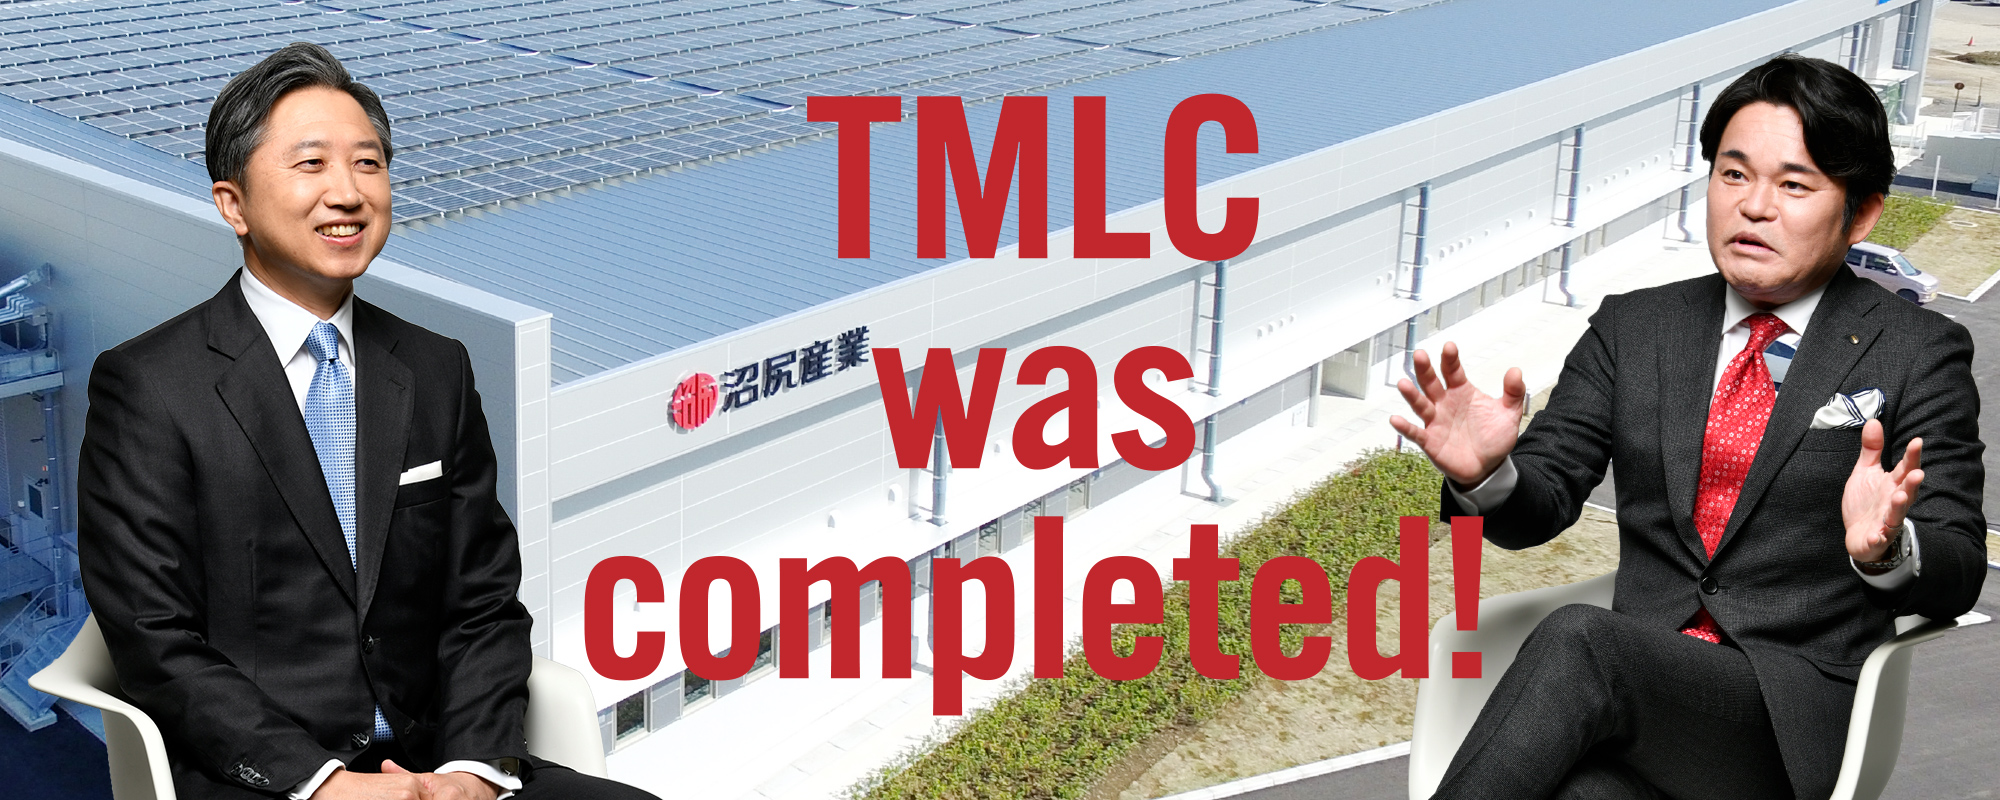 「つくば医薬品物流センター/TMLC」竣工記念特別対談 つくば初となる医薬品専用の物流センターが竣工。